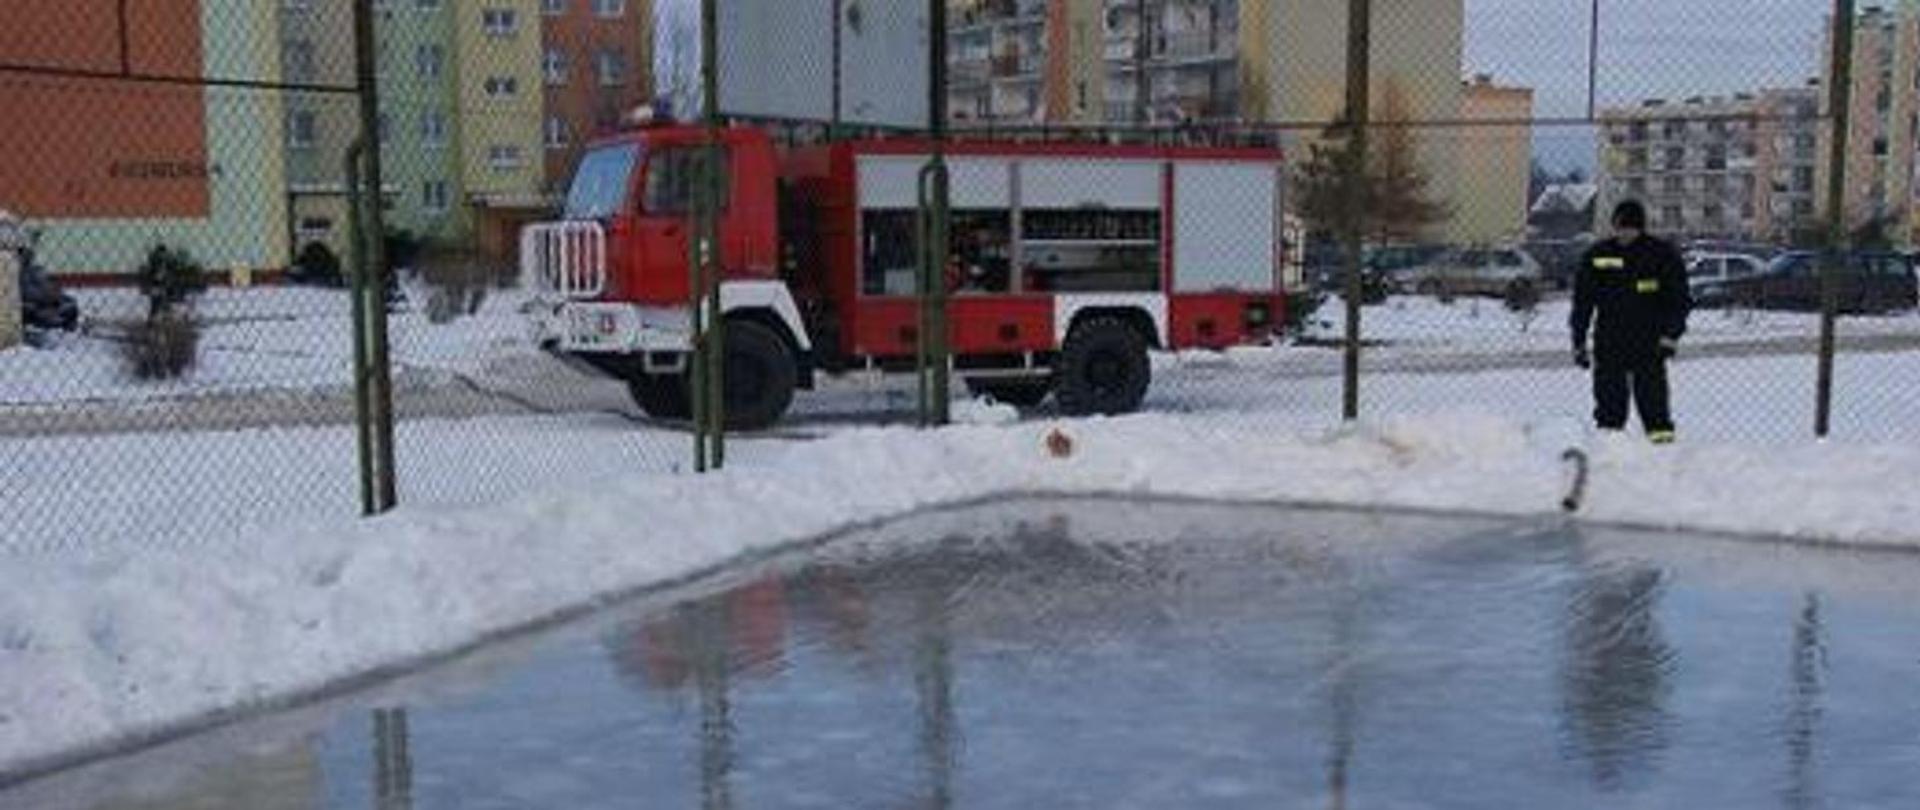 samochód strażacki stoi obok lodowiska, strażak kontroluje poziom wody wylewanej na taflę